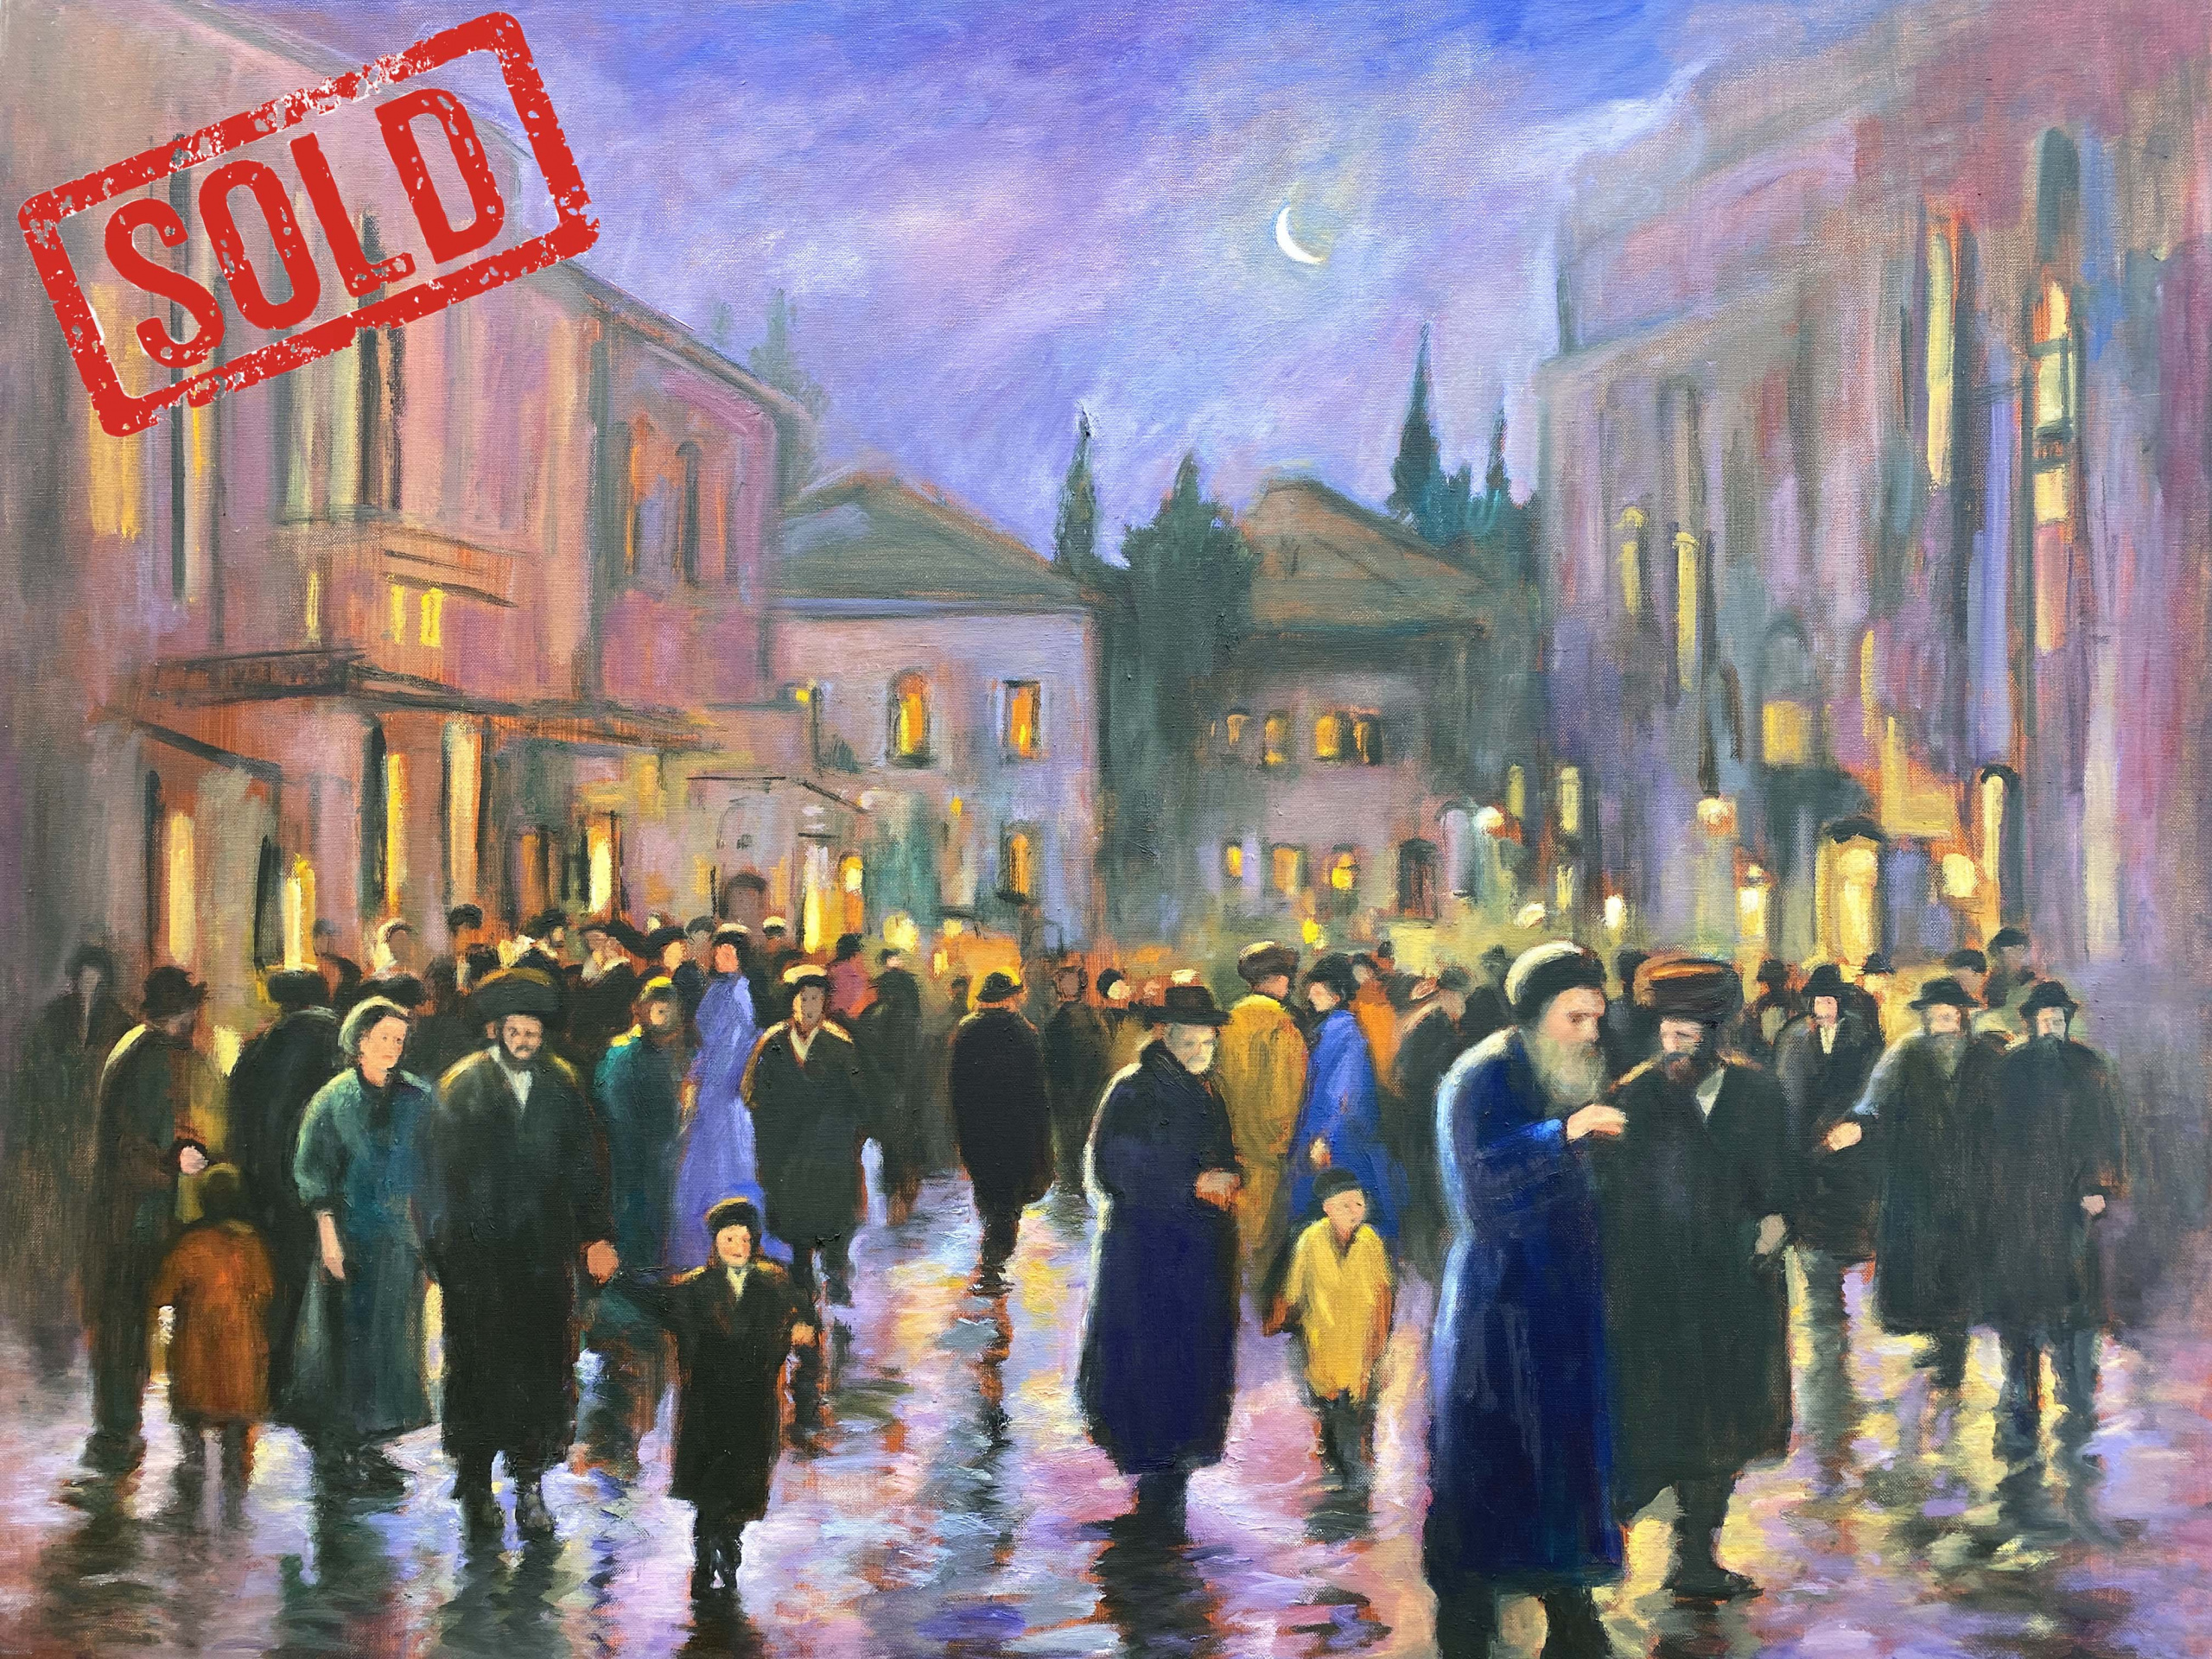 Zvi Malnoviter - Rainy night in Jerusalem - Fen art -Jerusalem - Gallery - Painting by Zvi Malnovitzer - Sold.